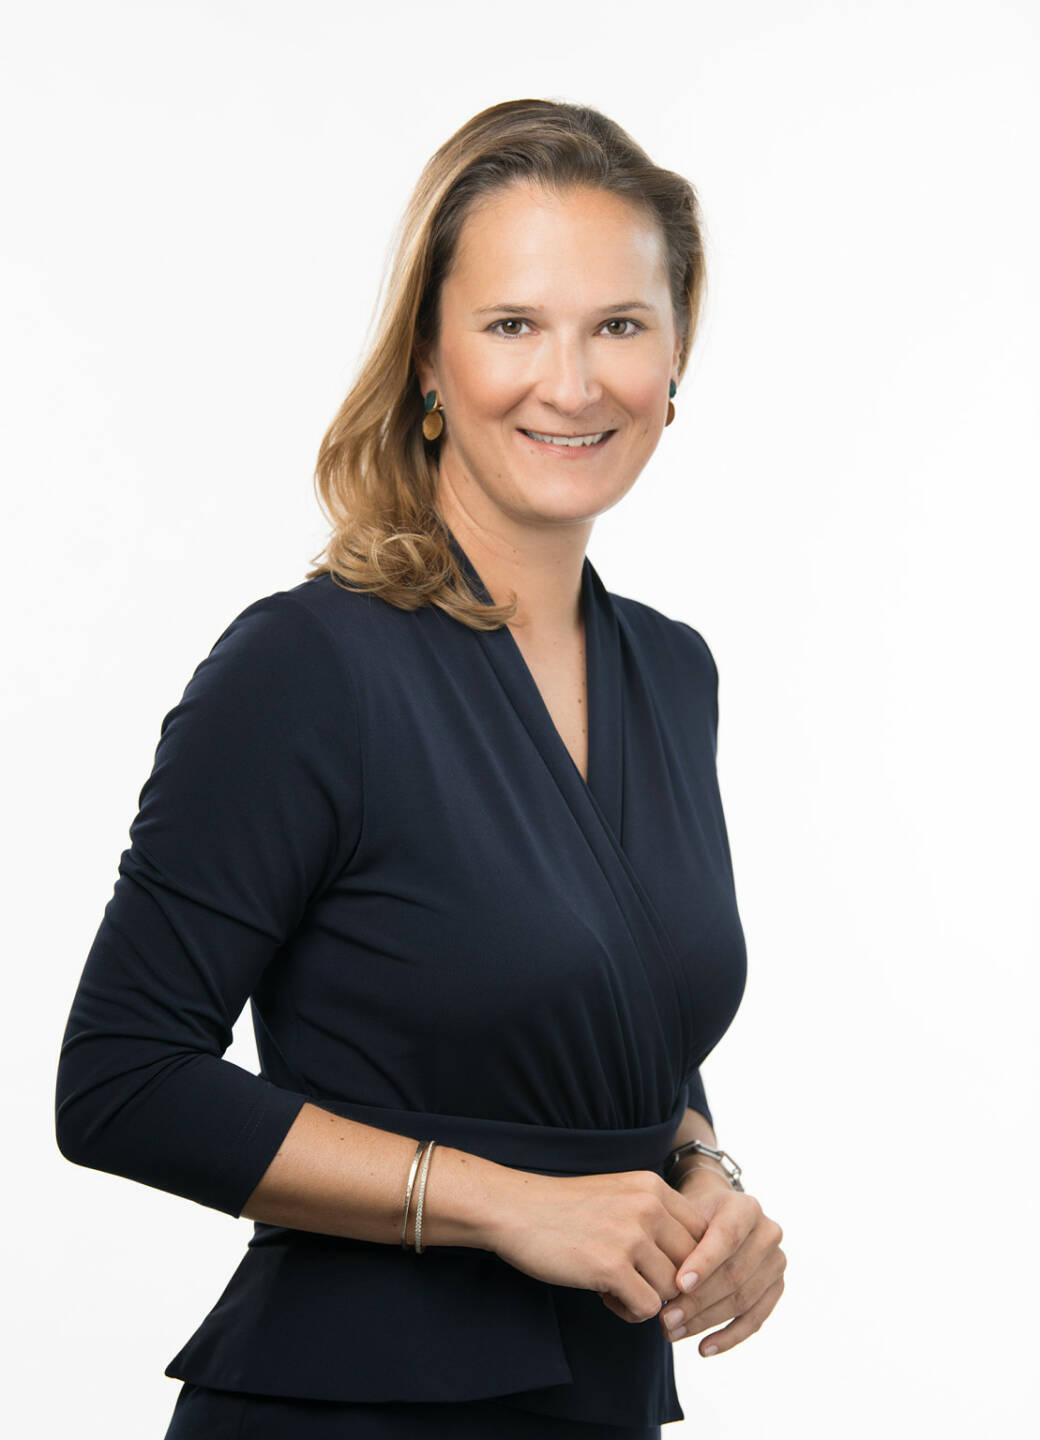 Birgit Stöber wird ab 1. Oktober 2019 Geschäftsführerin für Finanzen sowie Vorstandsmitglied in der GoodMills Group (GMG). Ihr Aufgabenbereich wird zudem die Buchhaltung, das Controlling und das Corporate Development mit Mergers & Acquisitions (M&A) umfassen. Fotocredit: Georg Wilke